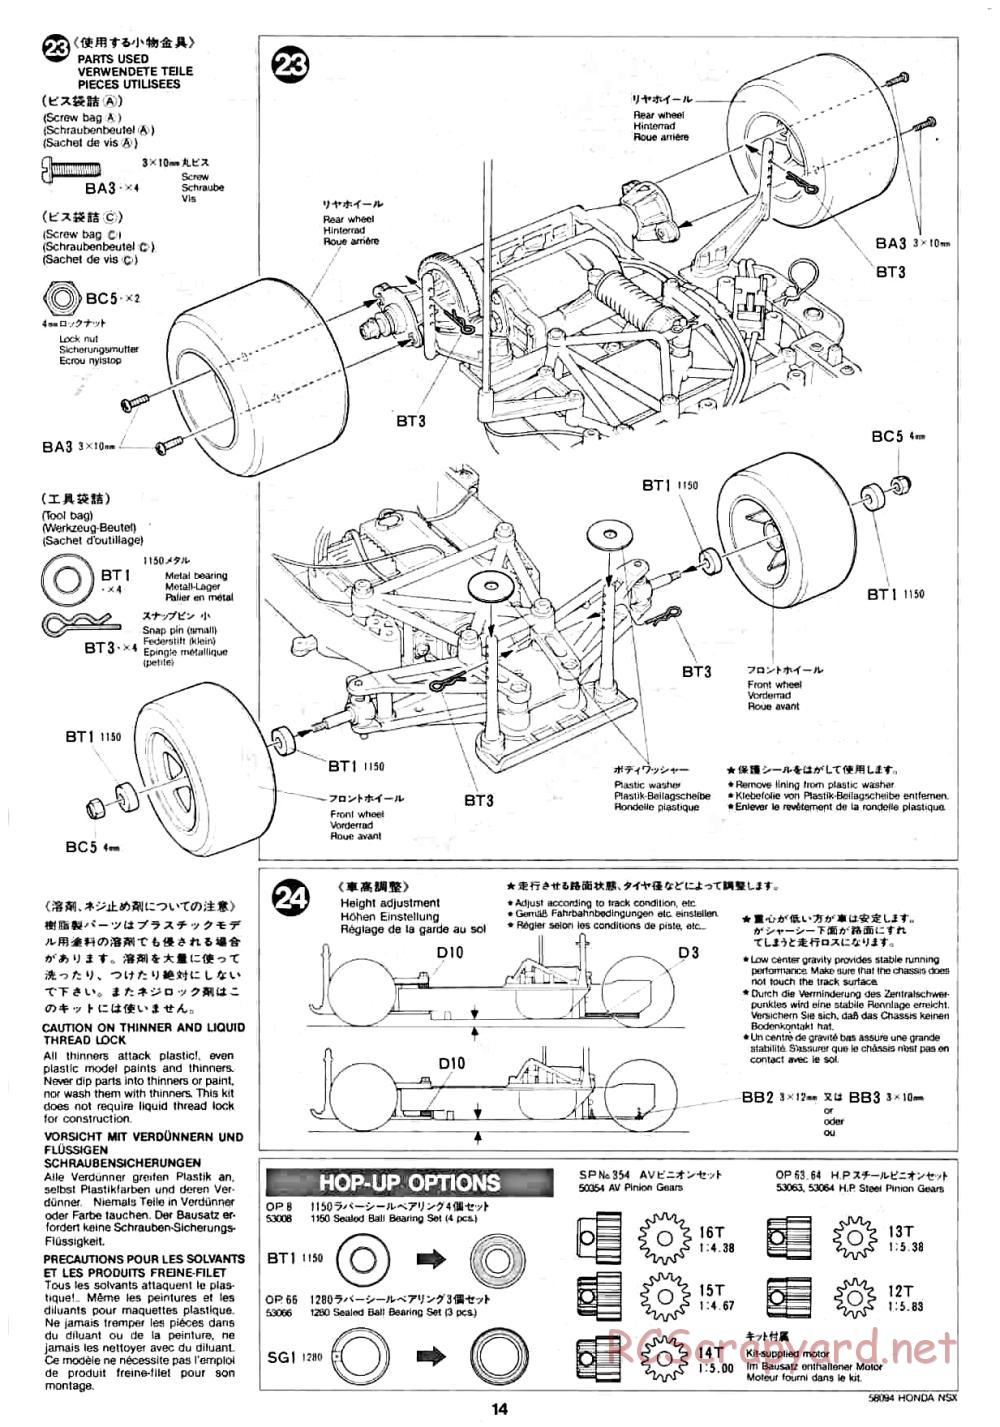 Tamiya - Honda NSX - 58094 - Manual - Page 14